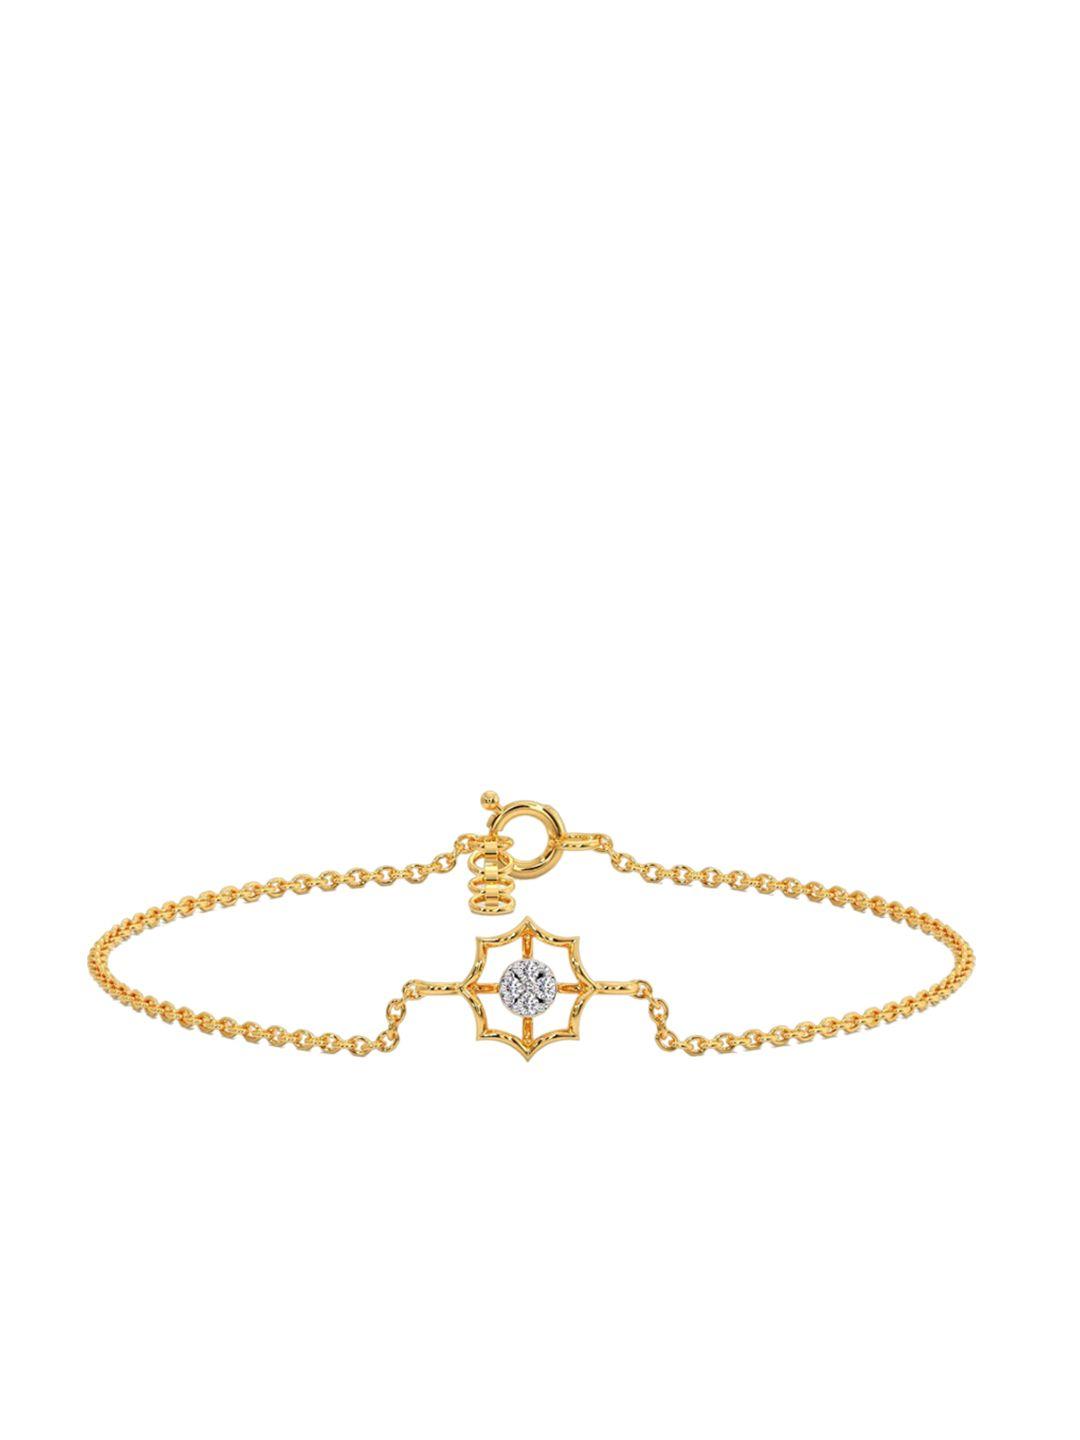 candere a kalyan jewellers company 18kt gold diamond studded bracelet-1.78 g